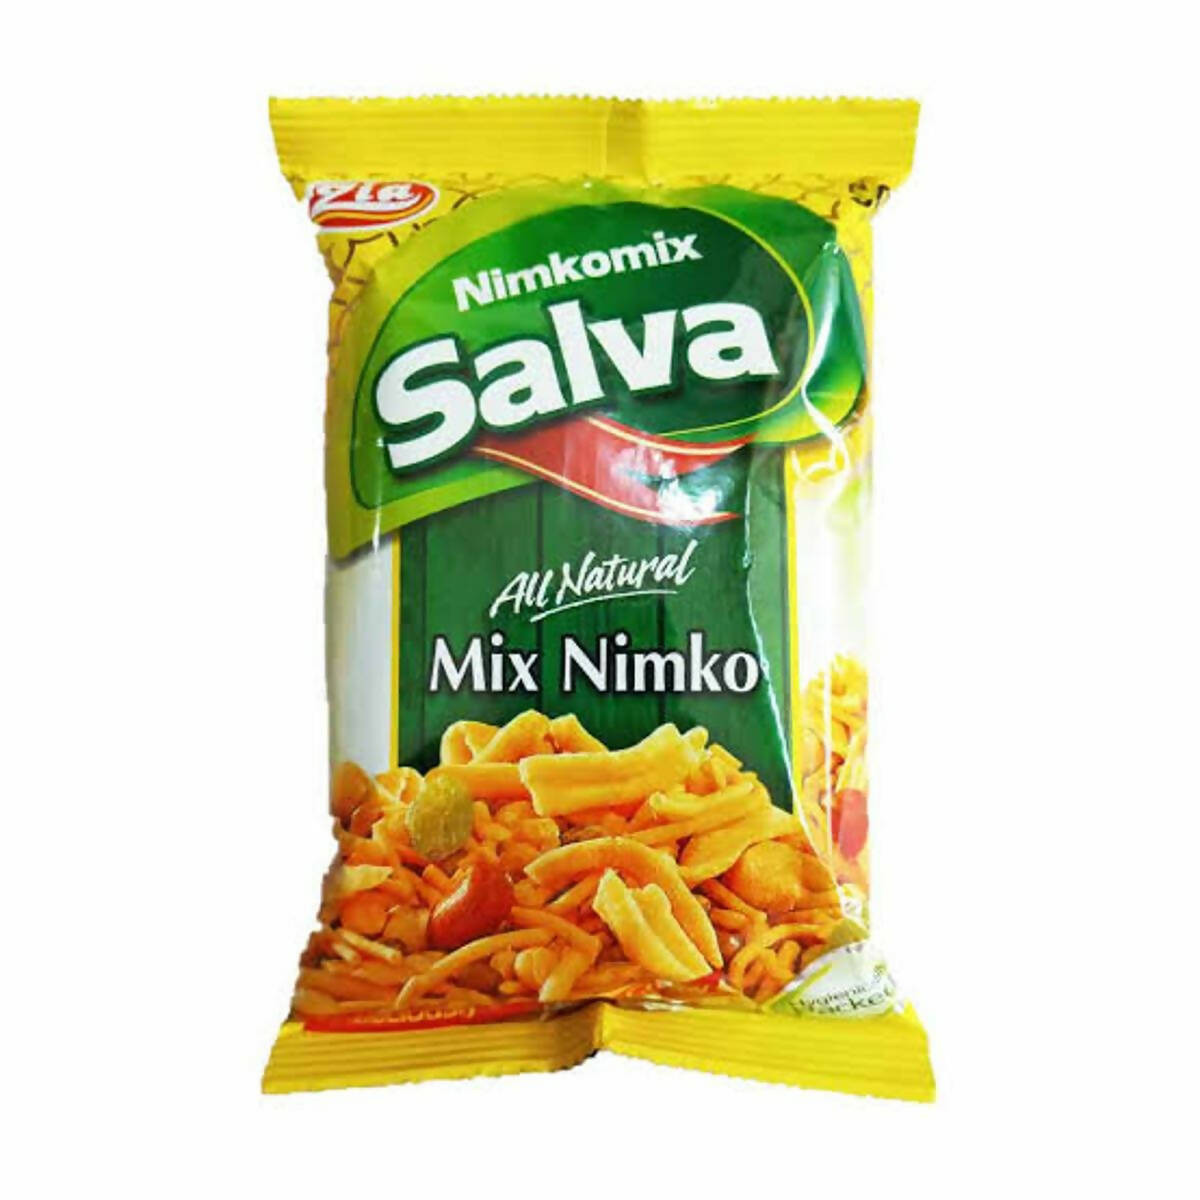 Salva Mix Nimko 1 Pcs